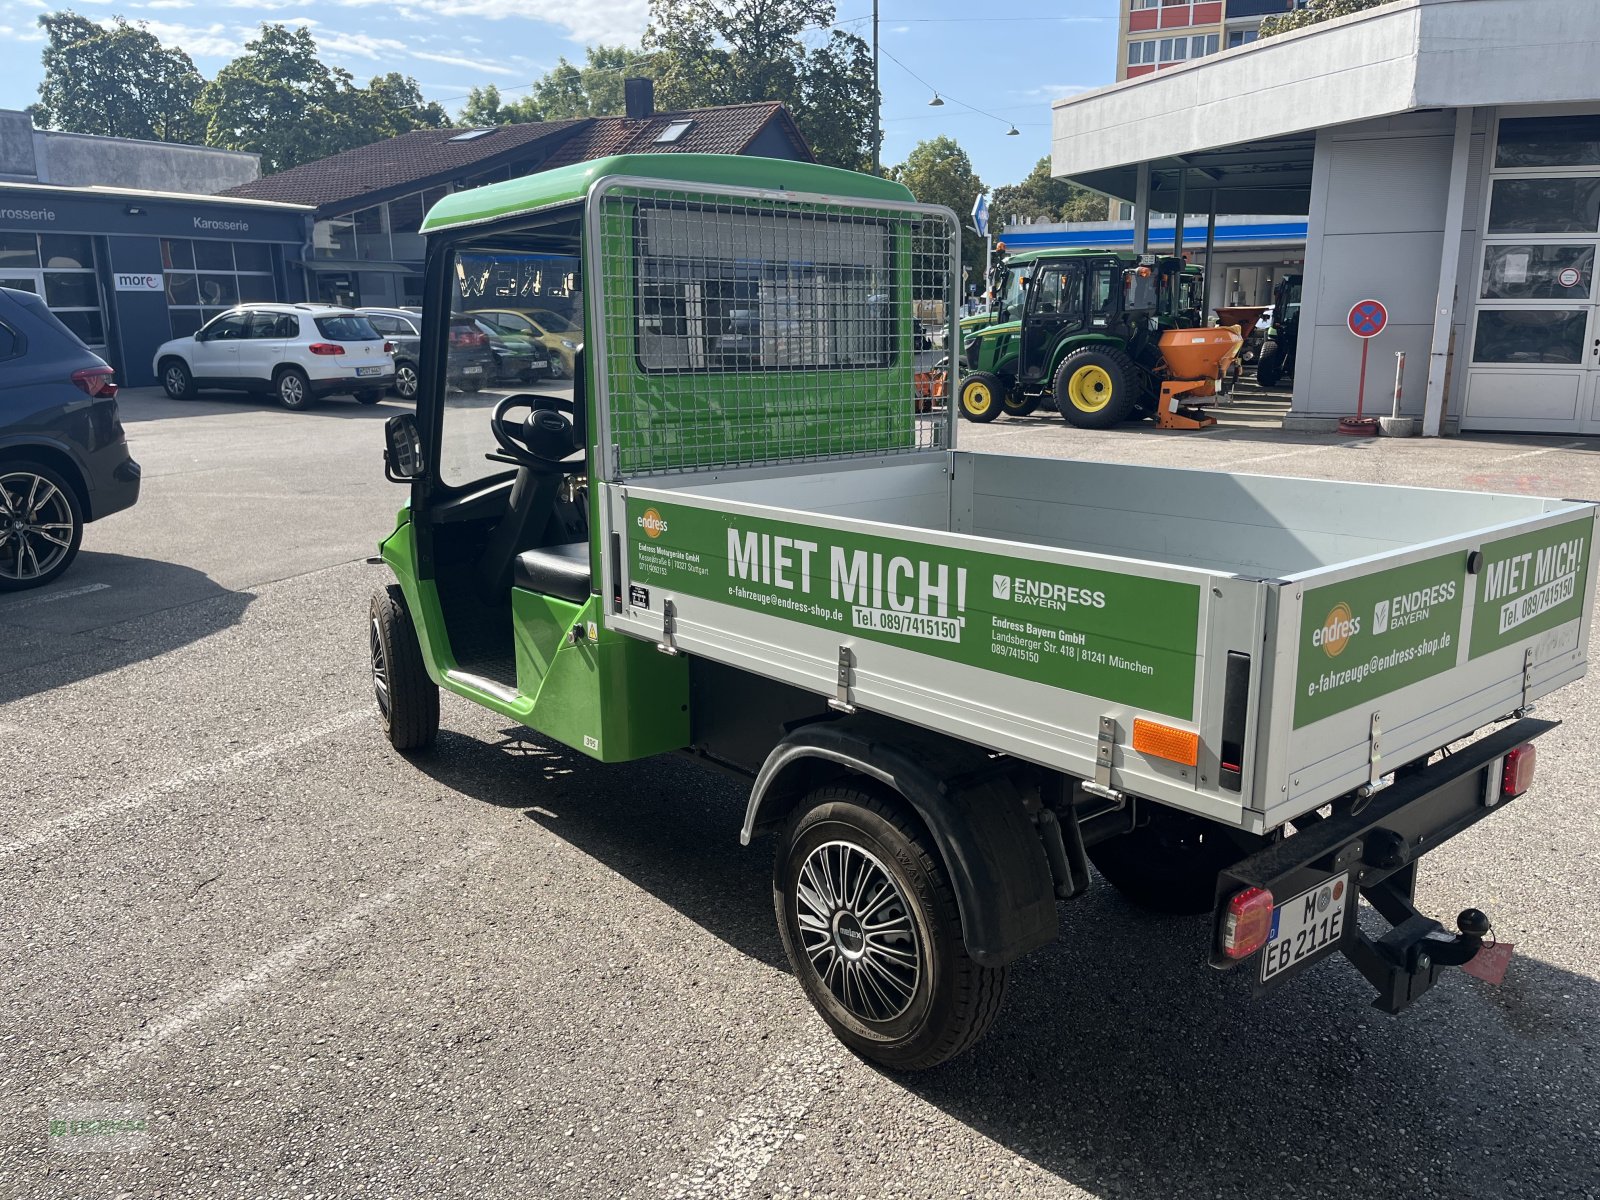 Transportfahrzeug des Typs Melex 390 N.CAR, Gebrauchtmaschine in München (Bild 2)